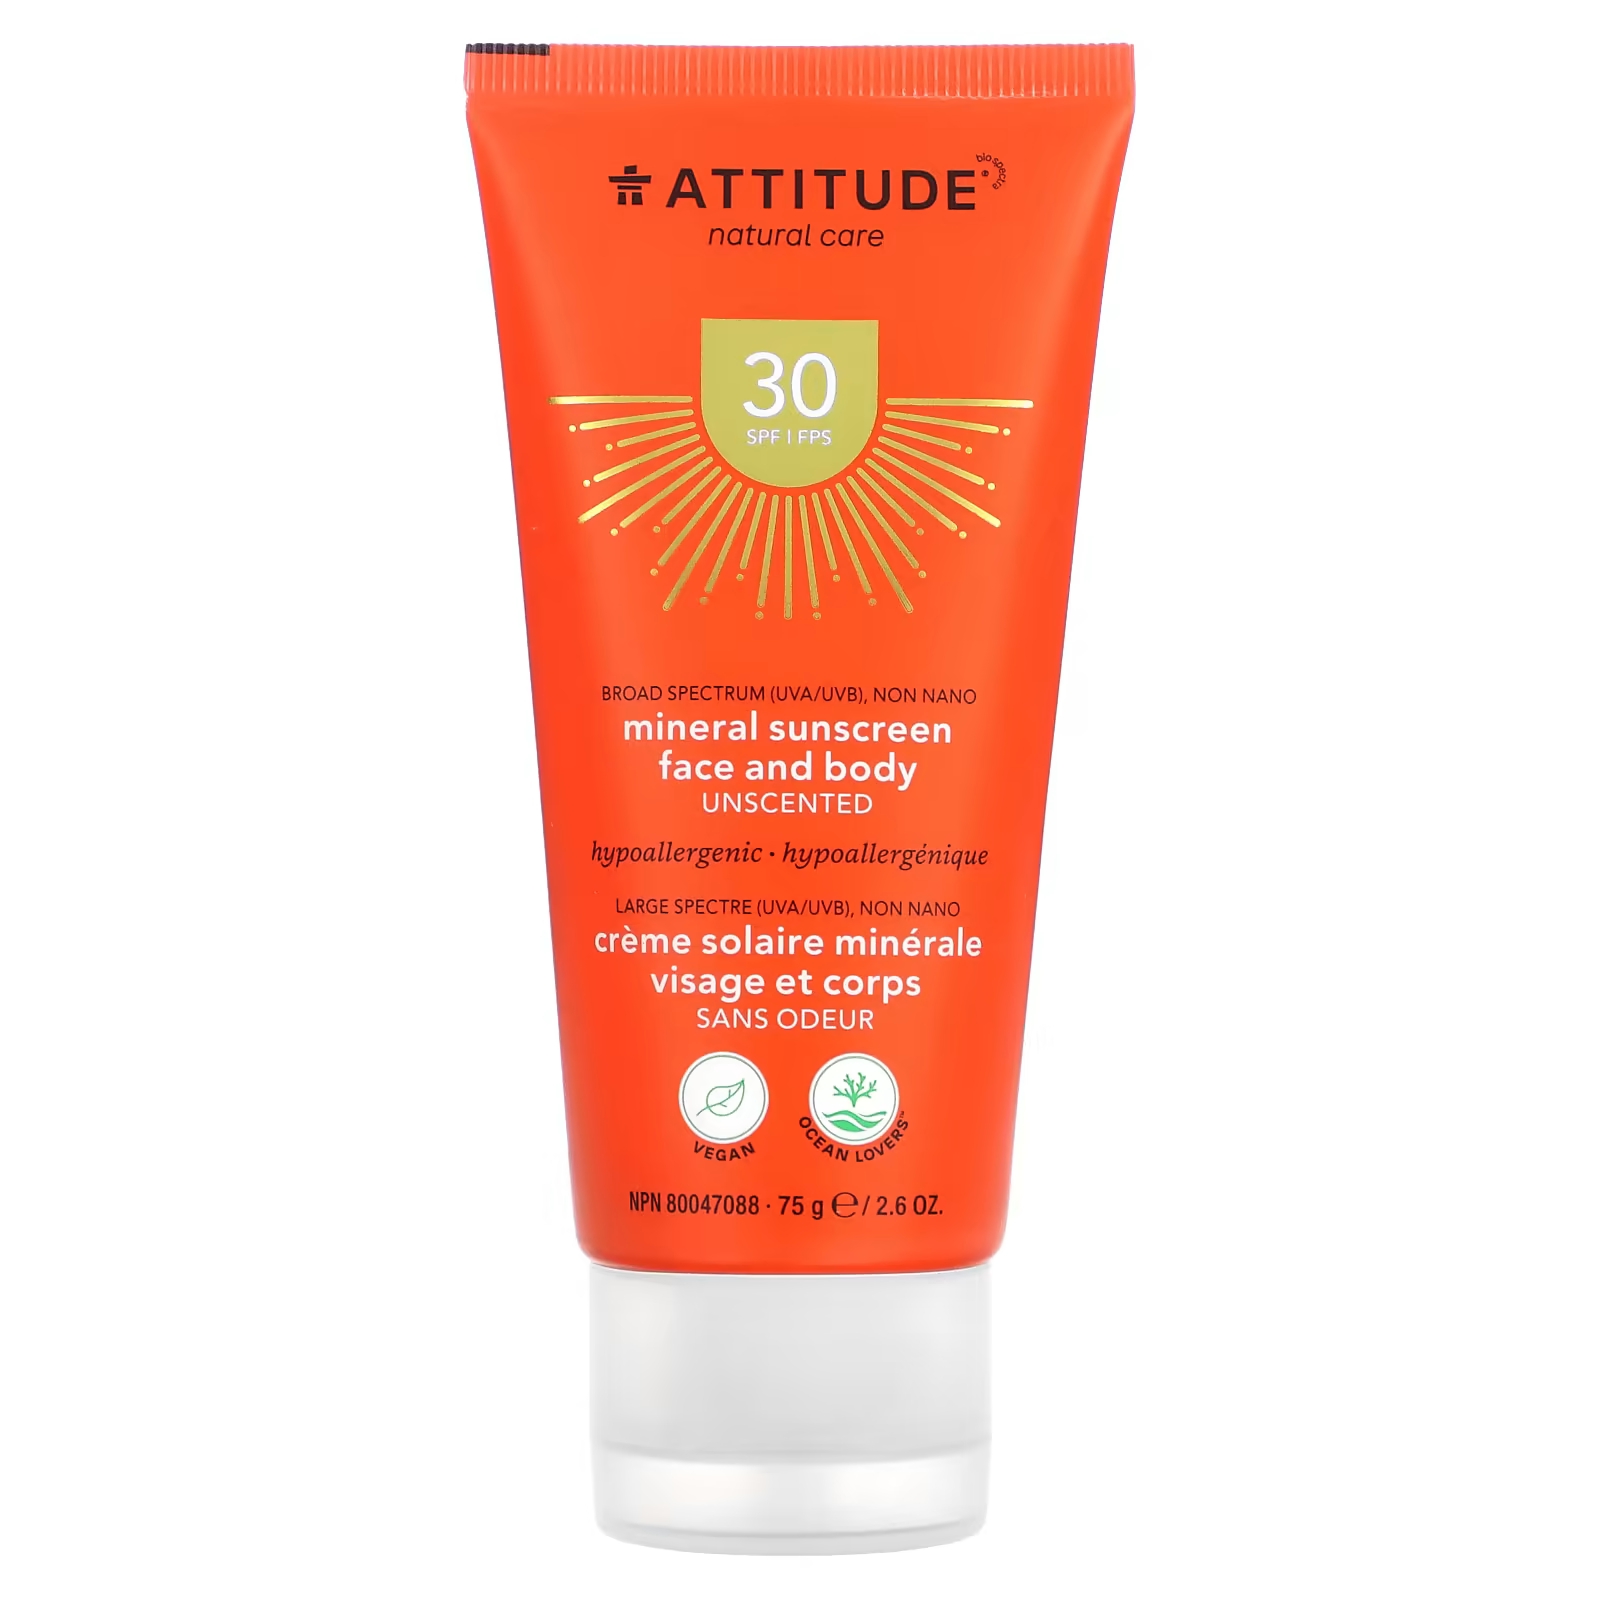 Солнцезащитный крем для лица и тела Attitude SPF 30 минеральный, 75 г caribbean solutions солнцезащитное средство spf 30 4 унции